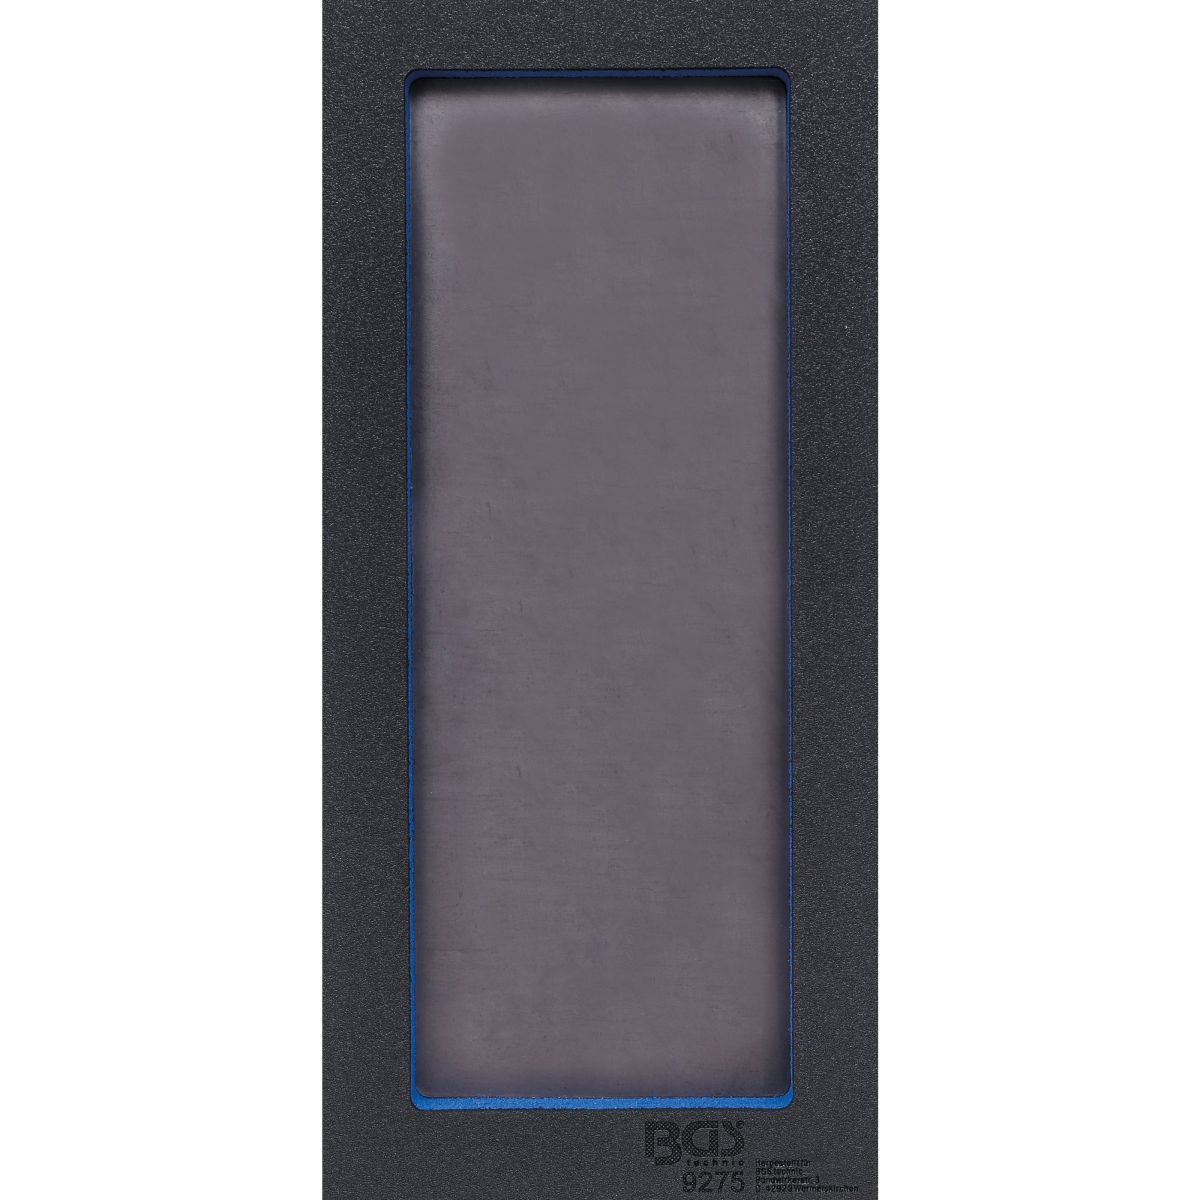 Bandeja para carro 1/3: Compartimento de almacenamiento con placa base magnética | 129 x 348 x 14 mm